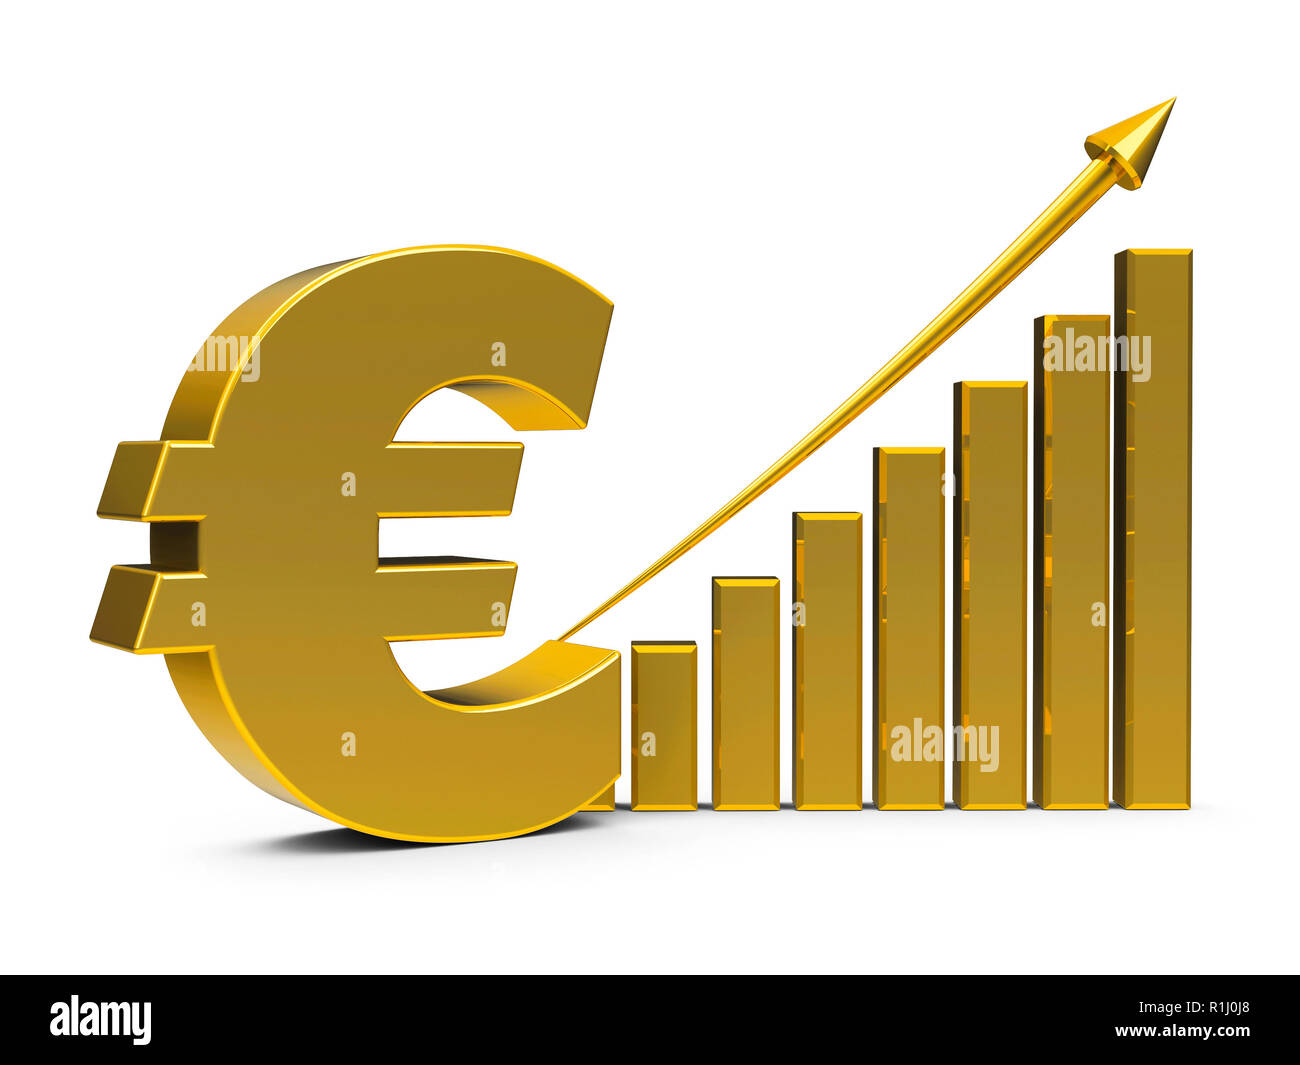 Gold Business graph mit dem Pfeil oben und euro Zeichen stellt die  Entwicklung des Euro-Kurses, dreidimensionale Rendering, 3D-Darstellung  Stockfotografie - Alamy